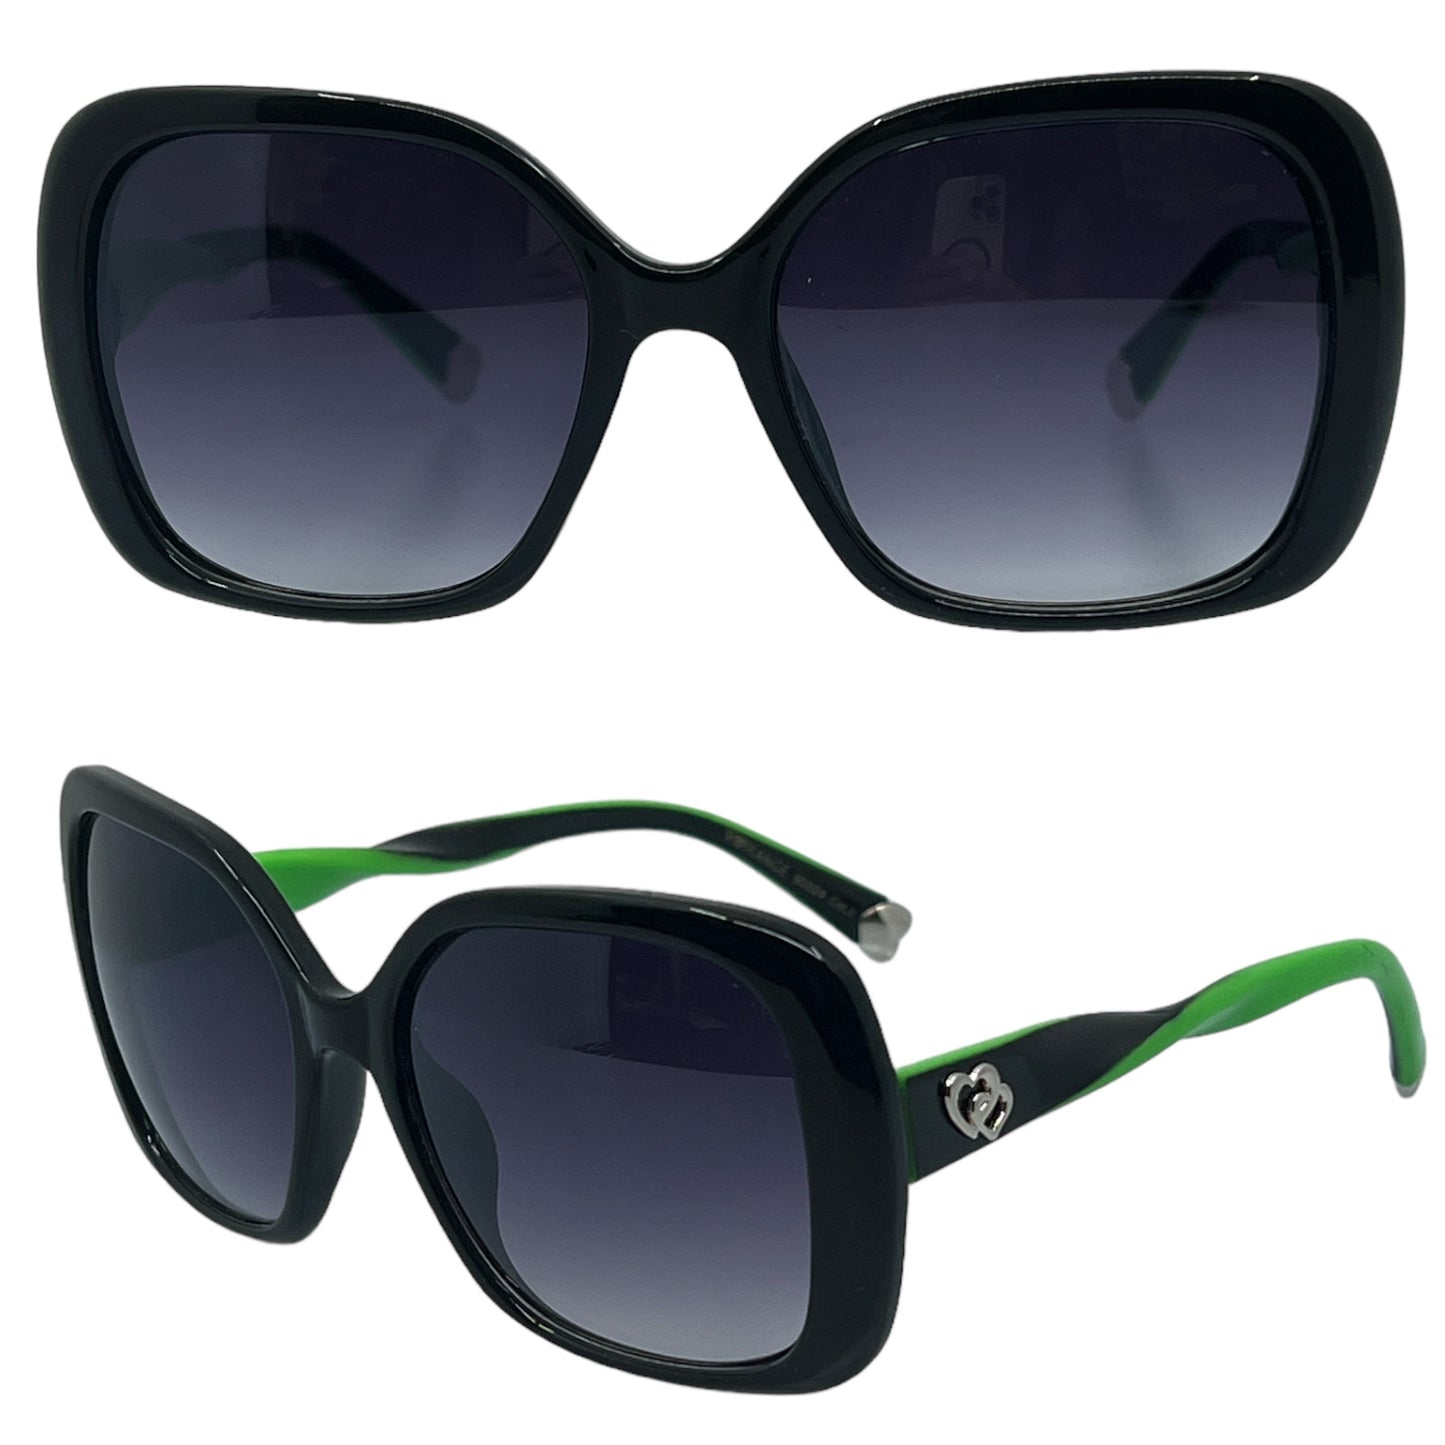 Women's Large Black Butterfly Sunglasses Romance ROM90024-Ladies-oversized-Black-sunglasses_2_cb53e0c4-79e2-44f9-a896-d4a5564352e8